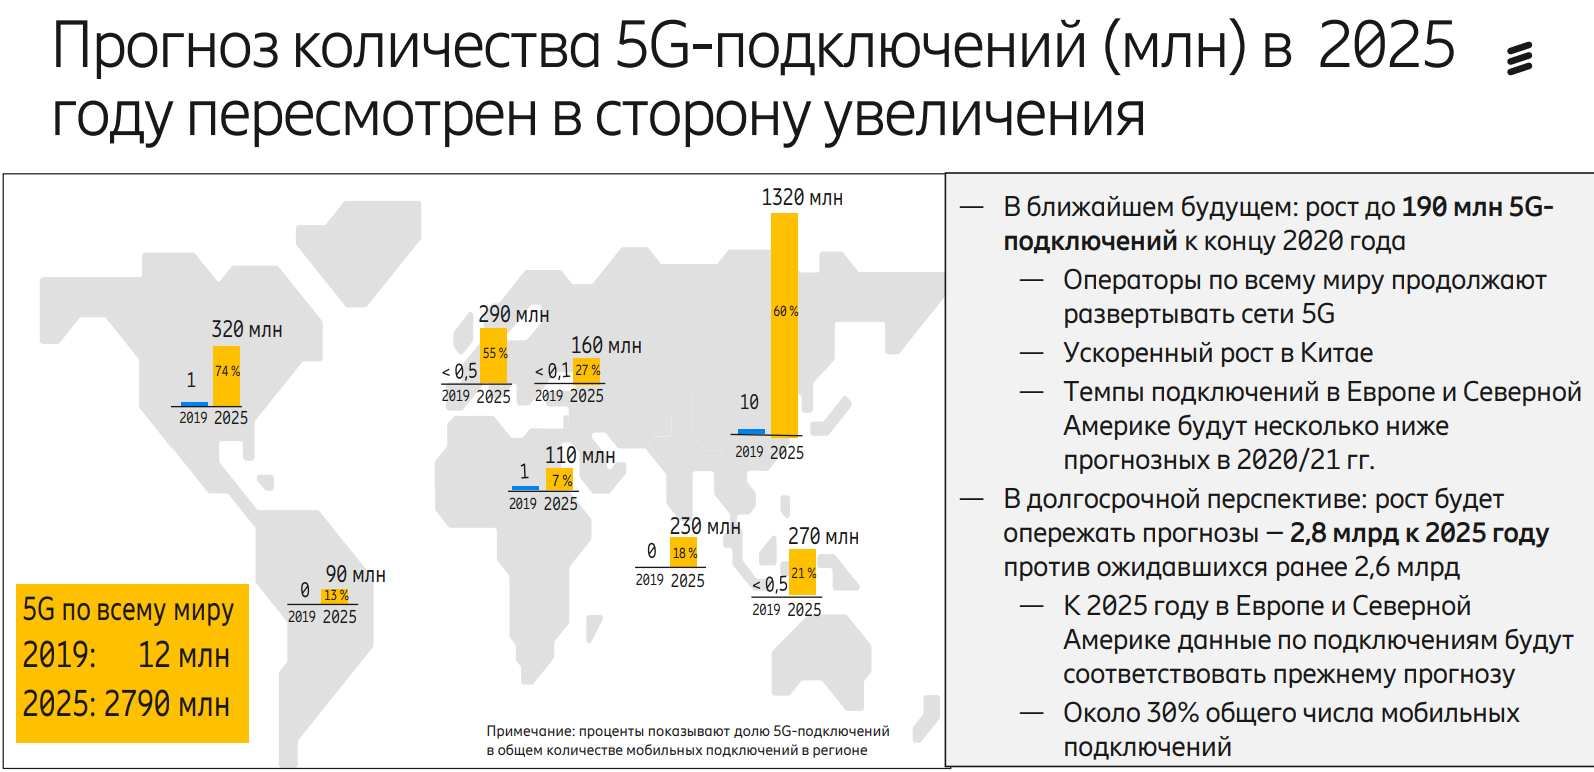 Единое пособие в 2025 году. 5g в мире. Развертывание 5 g в мире. Зона покрытия 5g в мире. Перспективы развития 5 g в России.